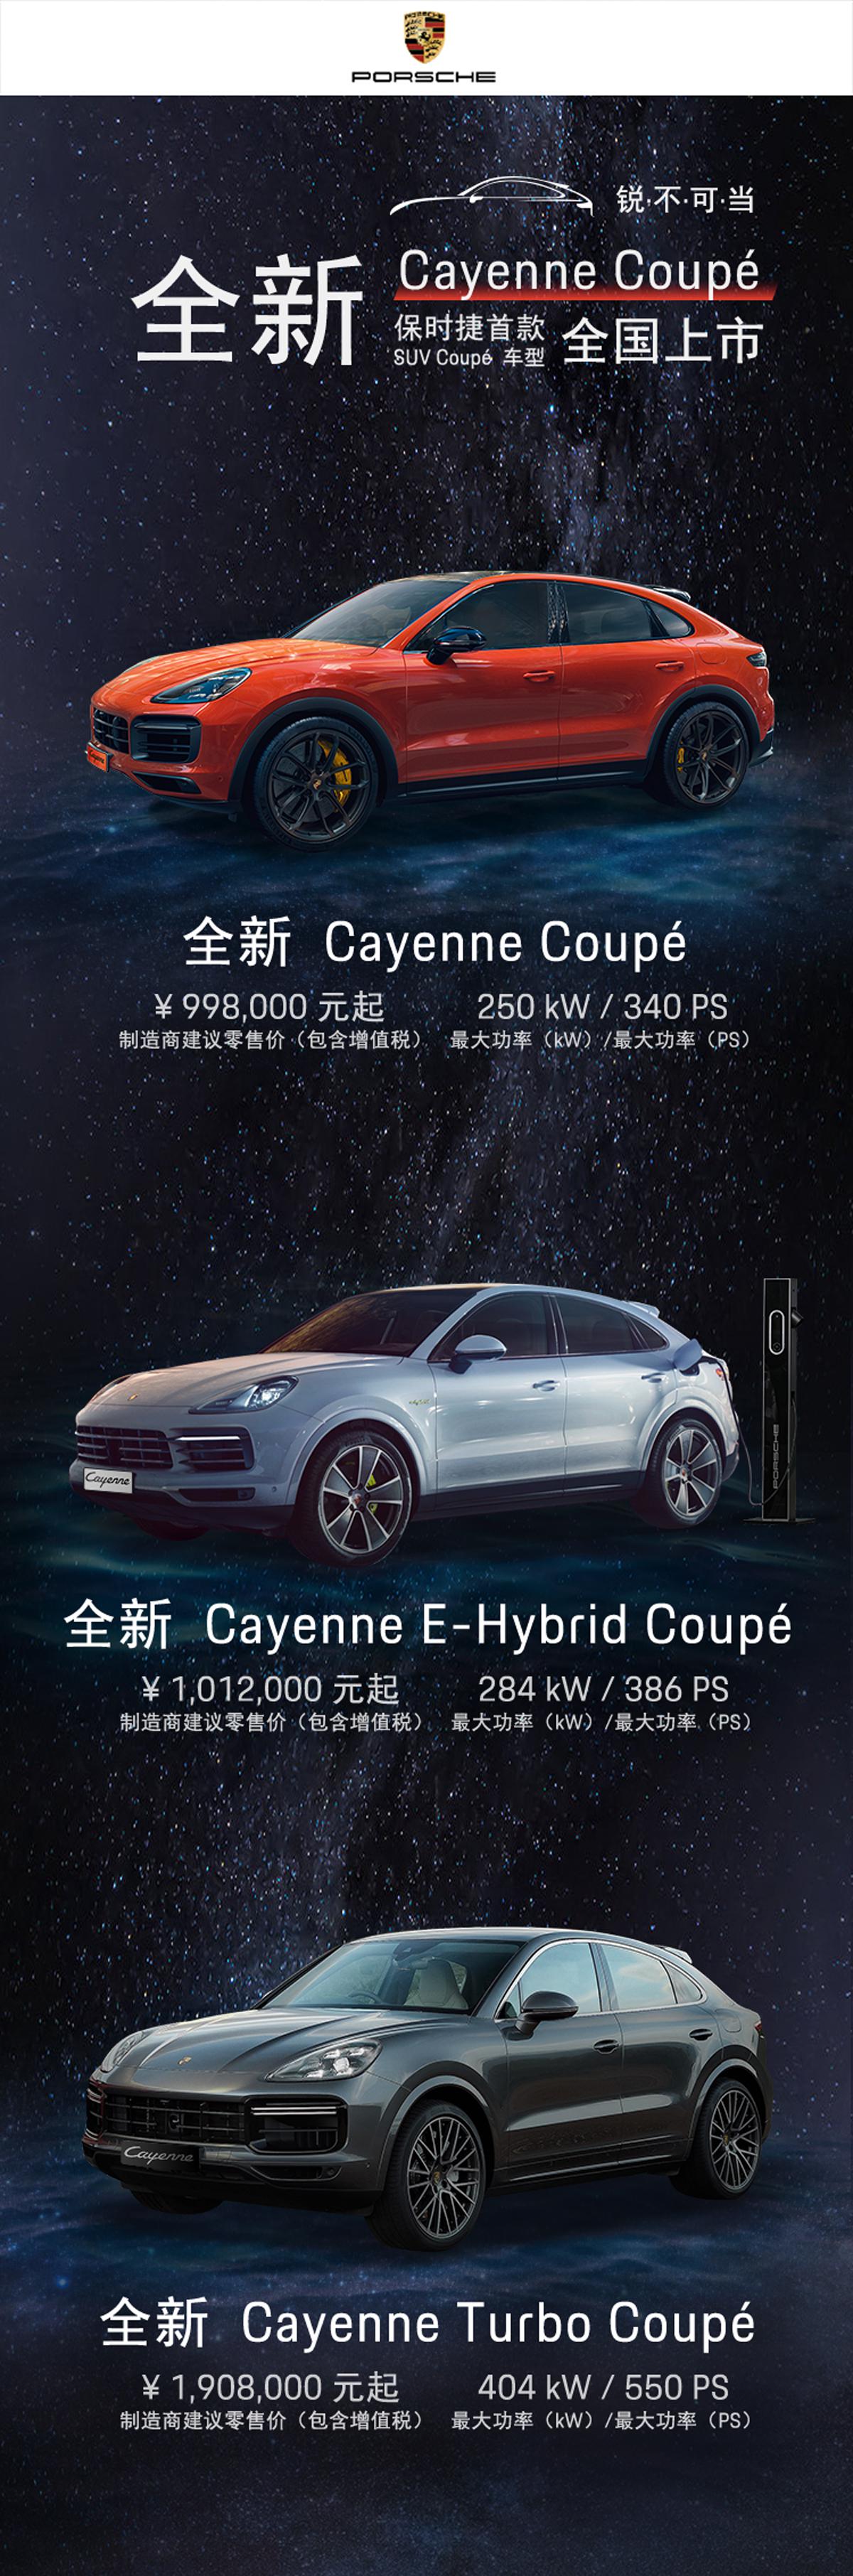 保时捷Cayenne Coupe上市  99.8万元起售